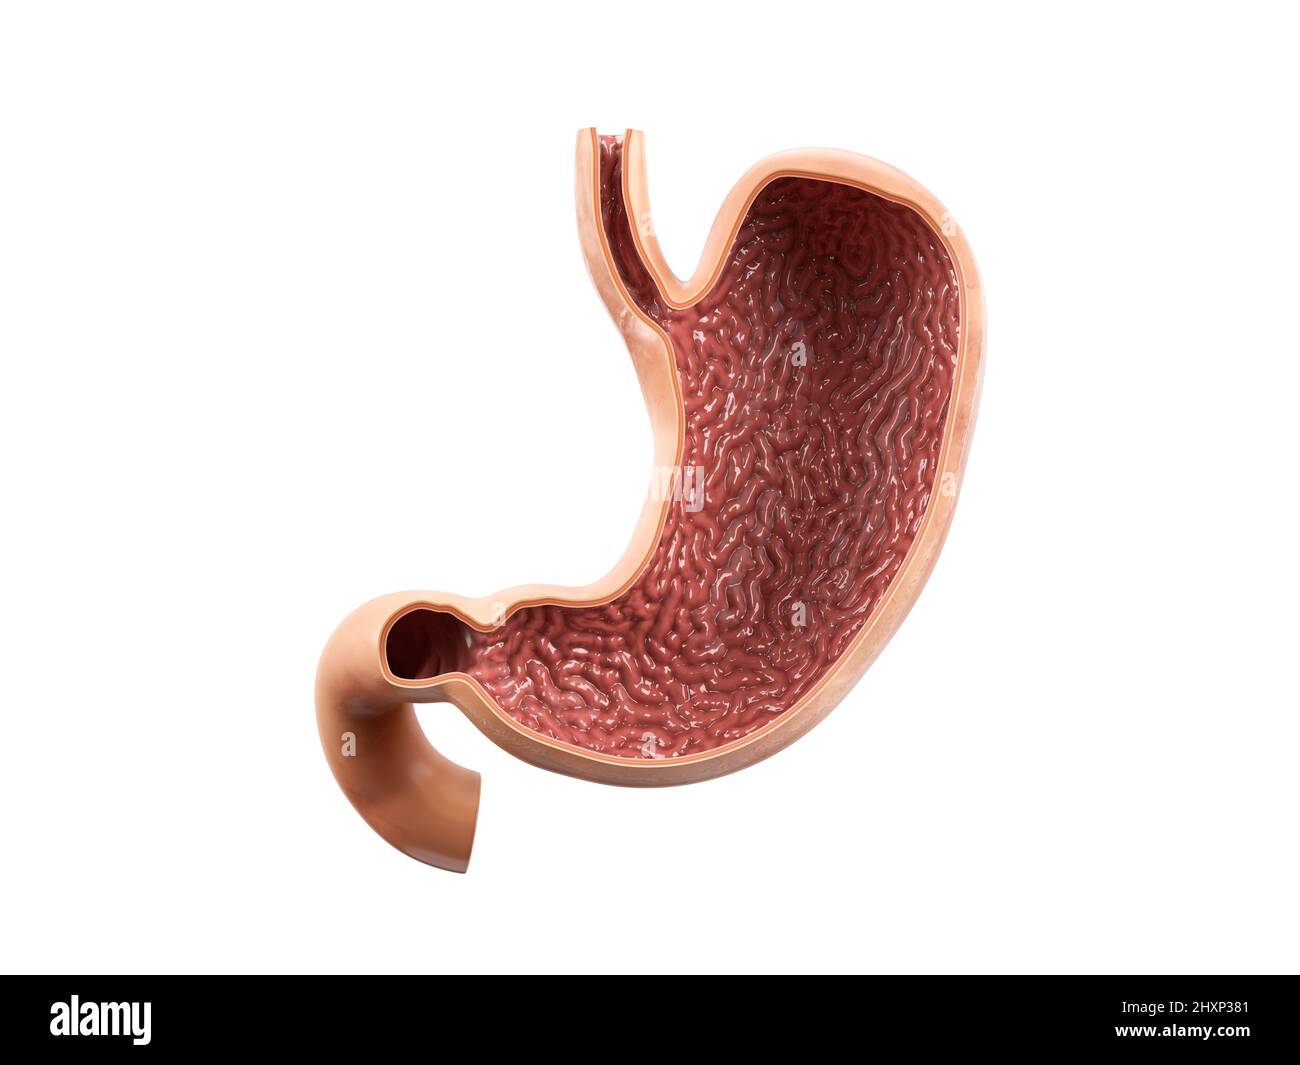 Illustration réaliste anatomique 3D de l'organe interne humain - estomac avec vue intérieure coupe section isolée sur fond blanc Banque D'Images